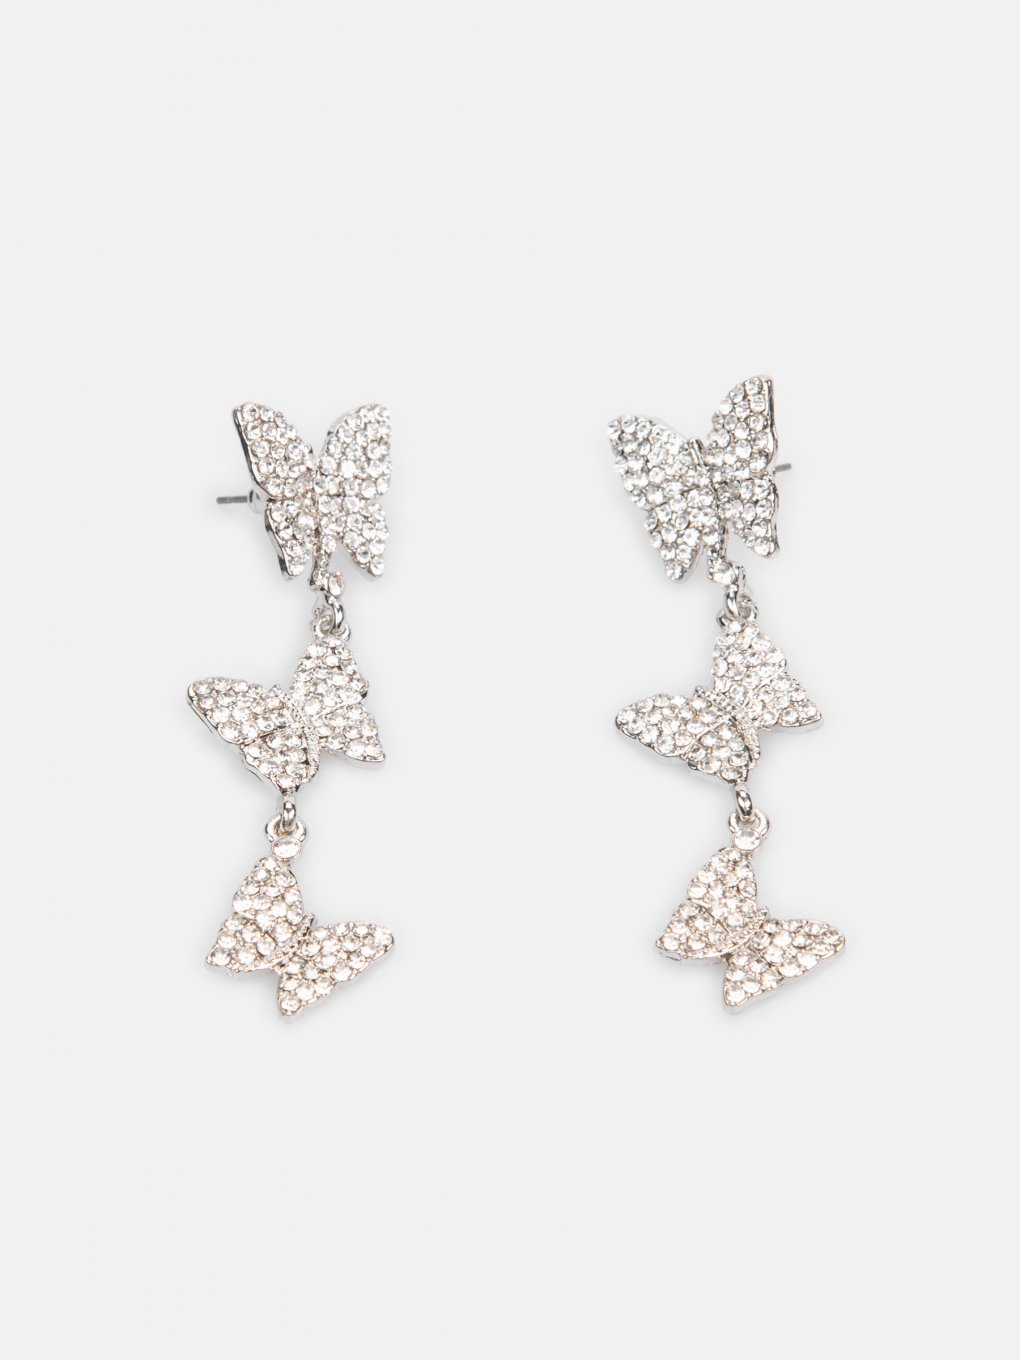 Long butterfly earrings